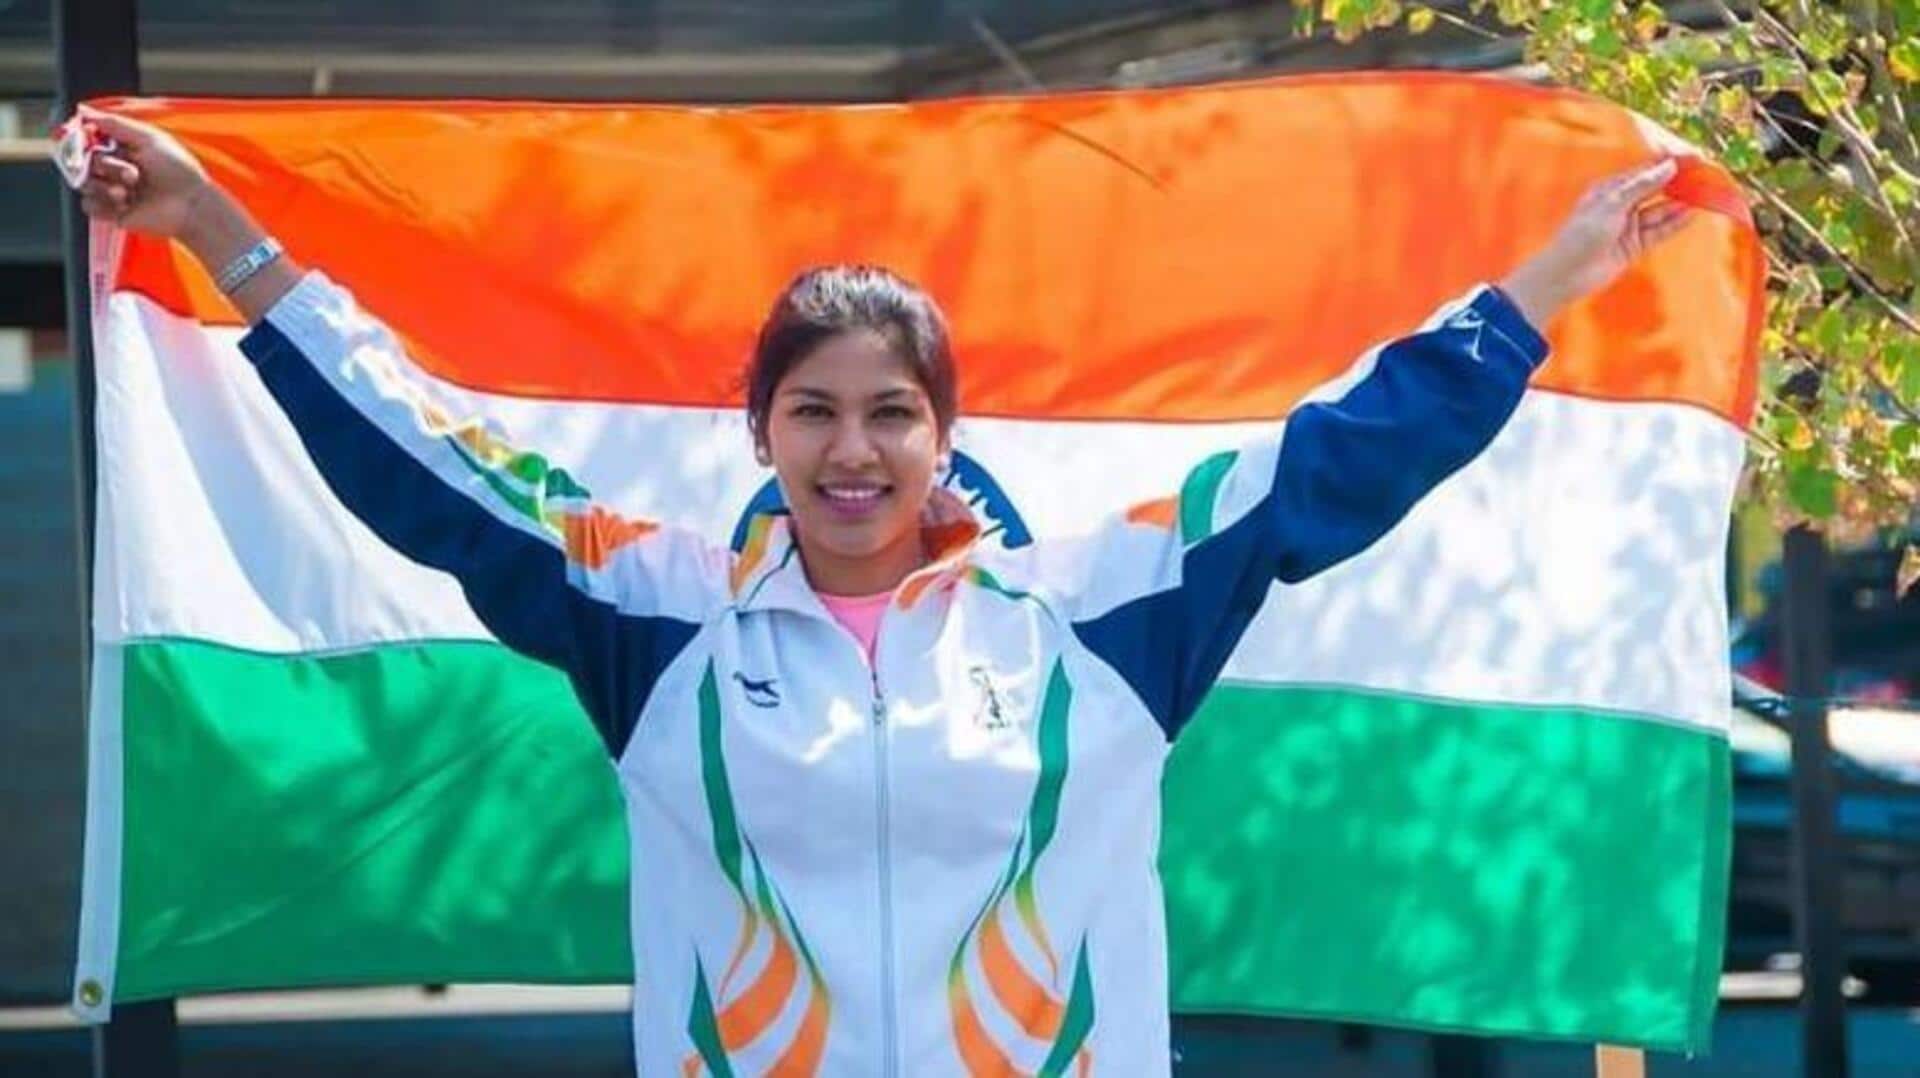 भवानी देवी ने रचा इतिहास, एशियाई चैंपियनशिप में पदक जीतने वाली पहली भारतीय तलवारबाज बनीं